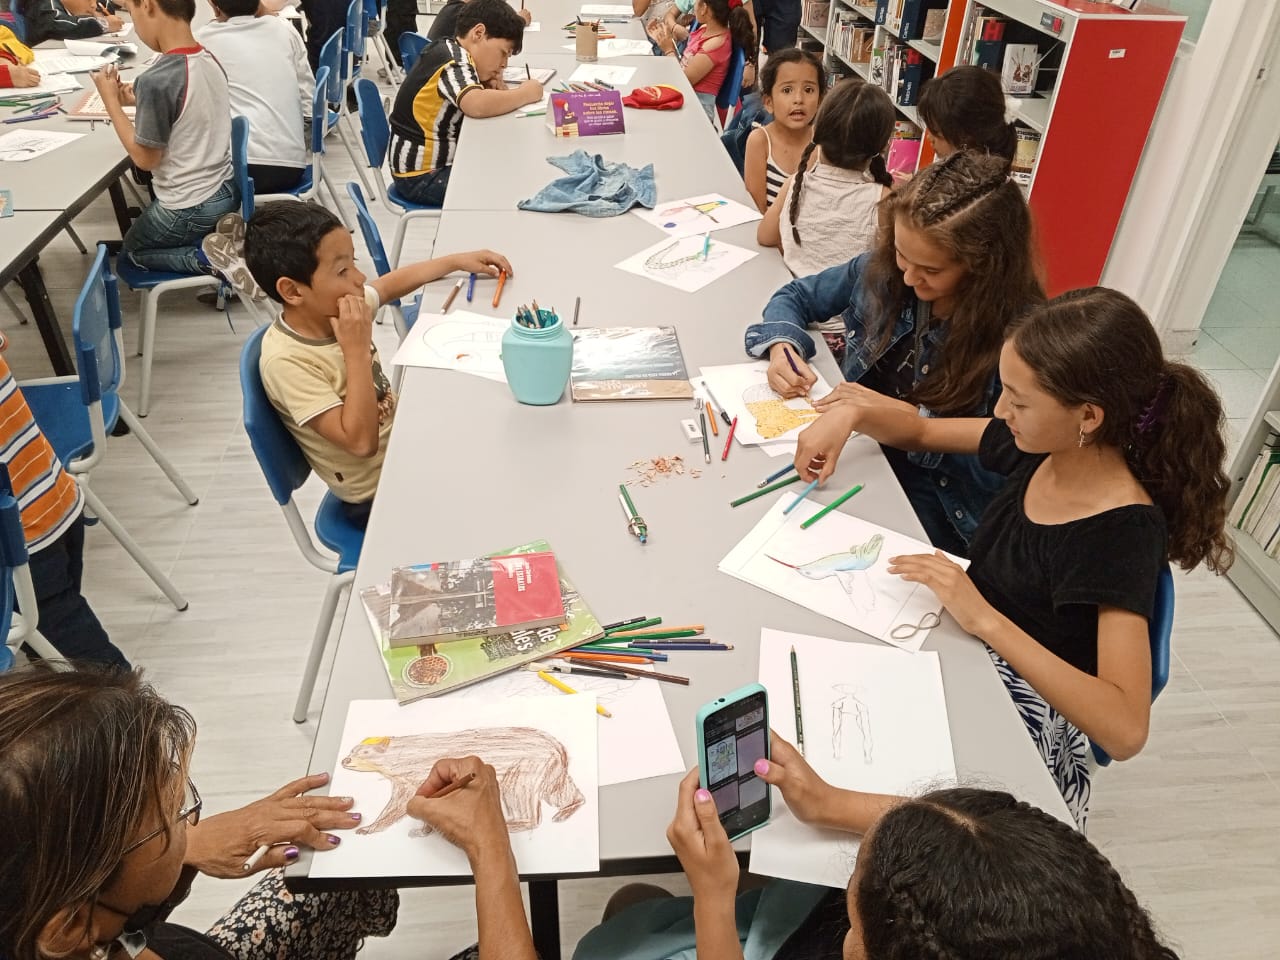 niños y niñas de diferentes edades dibujando con lapices de colores sobre una mesa blanca.